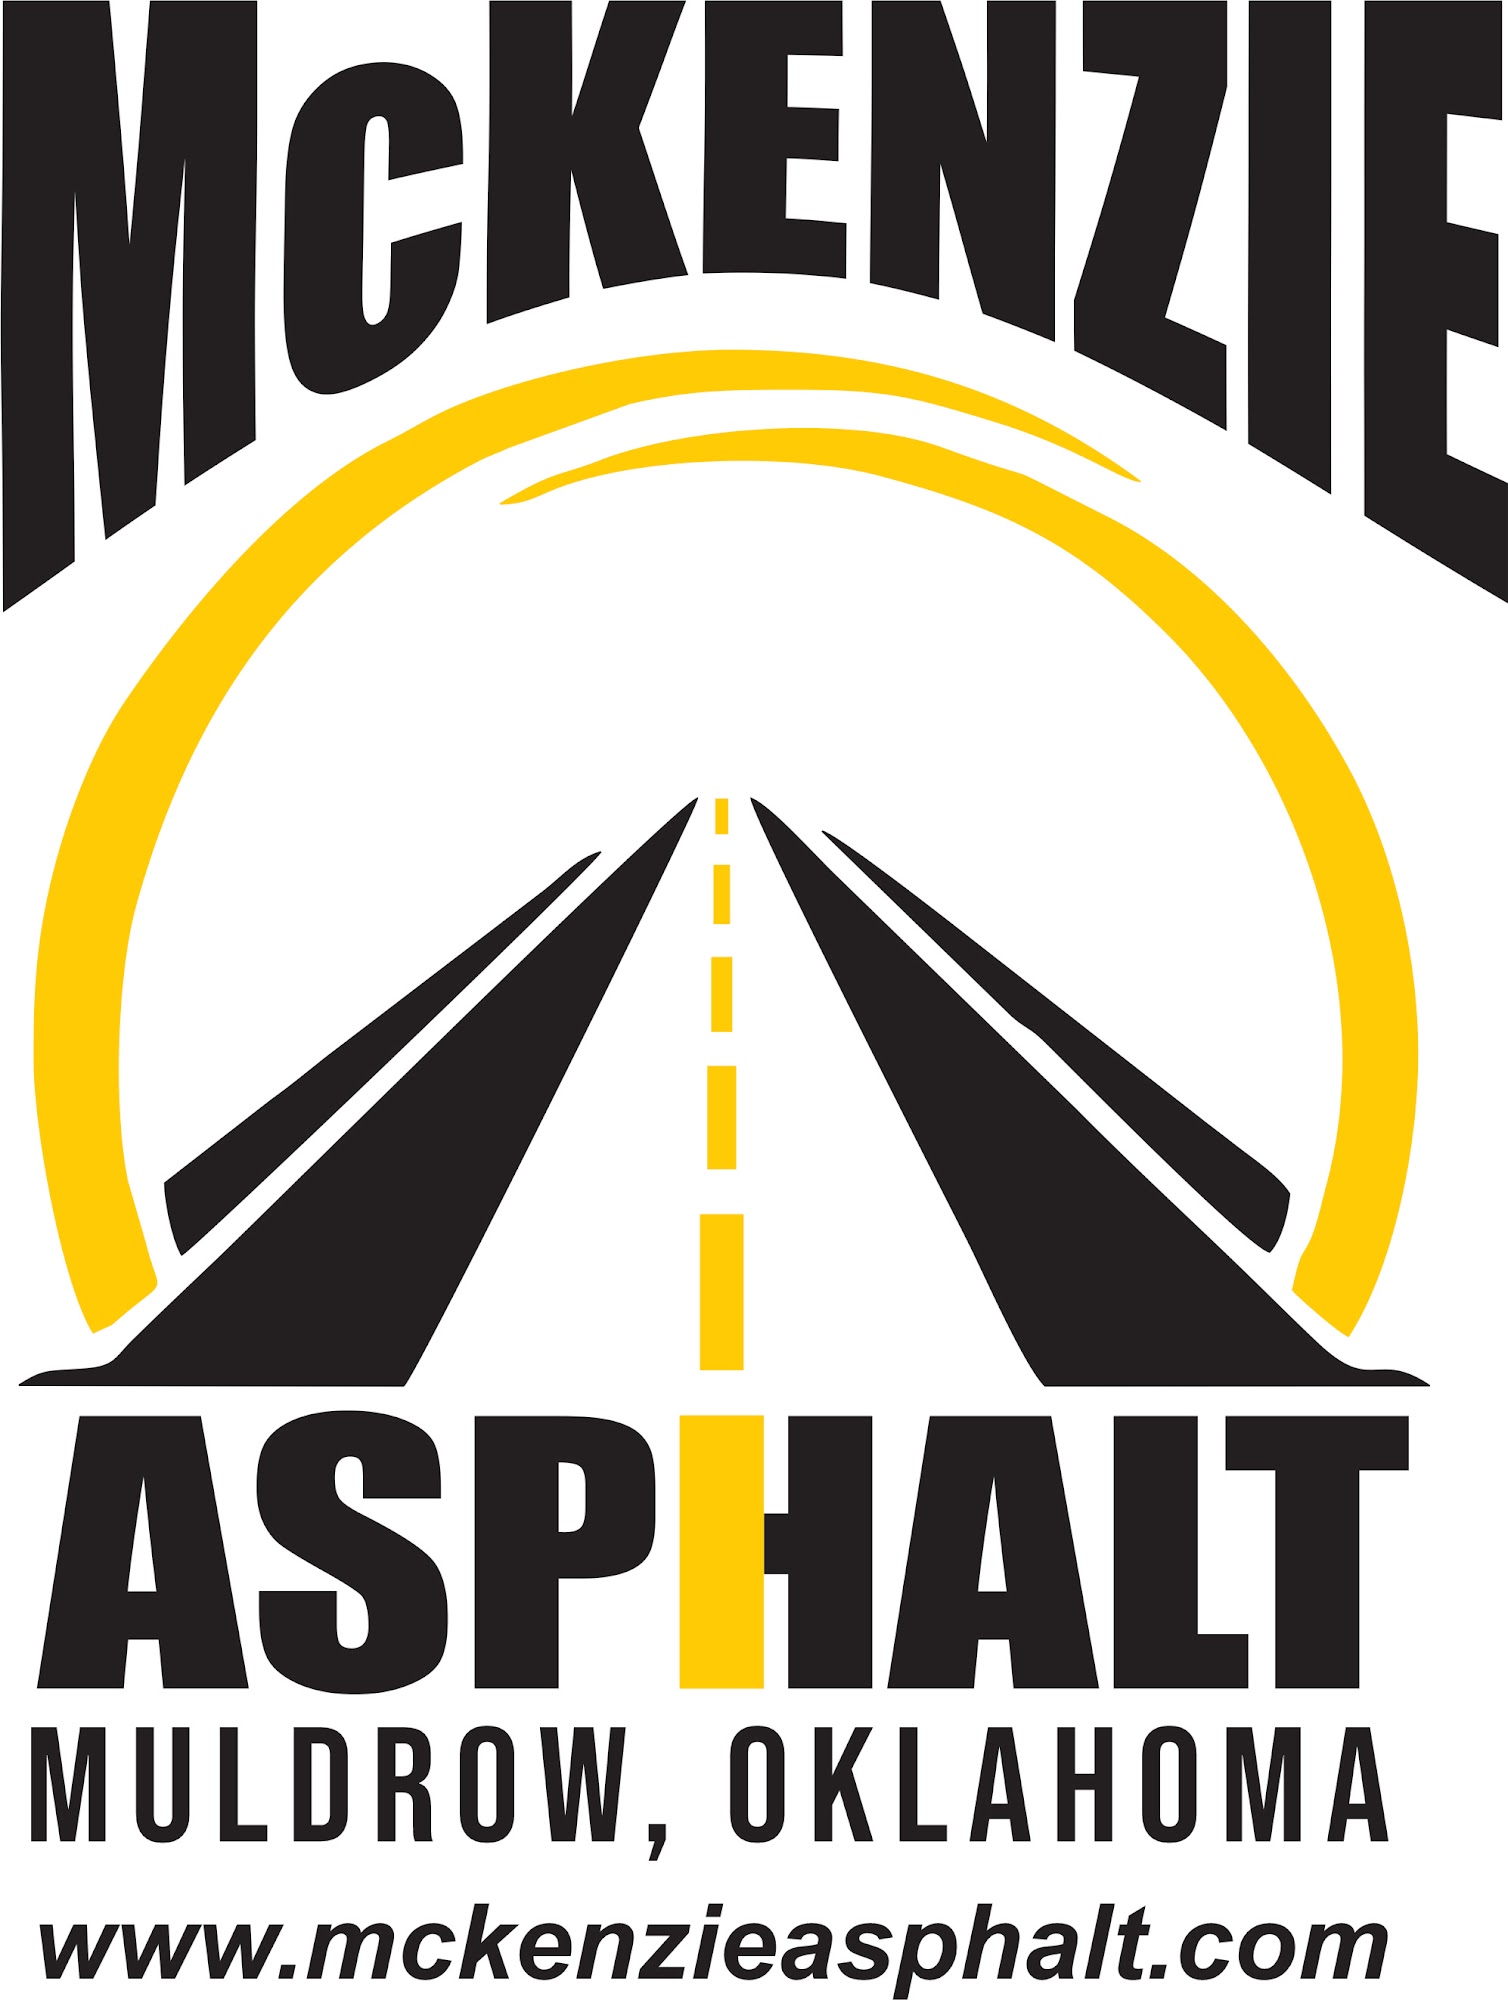 McKenzie Asphalt LLC 473747 OK-101, Muldrow Oklahoma 74948